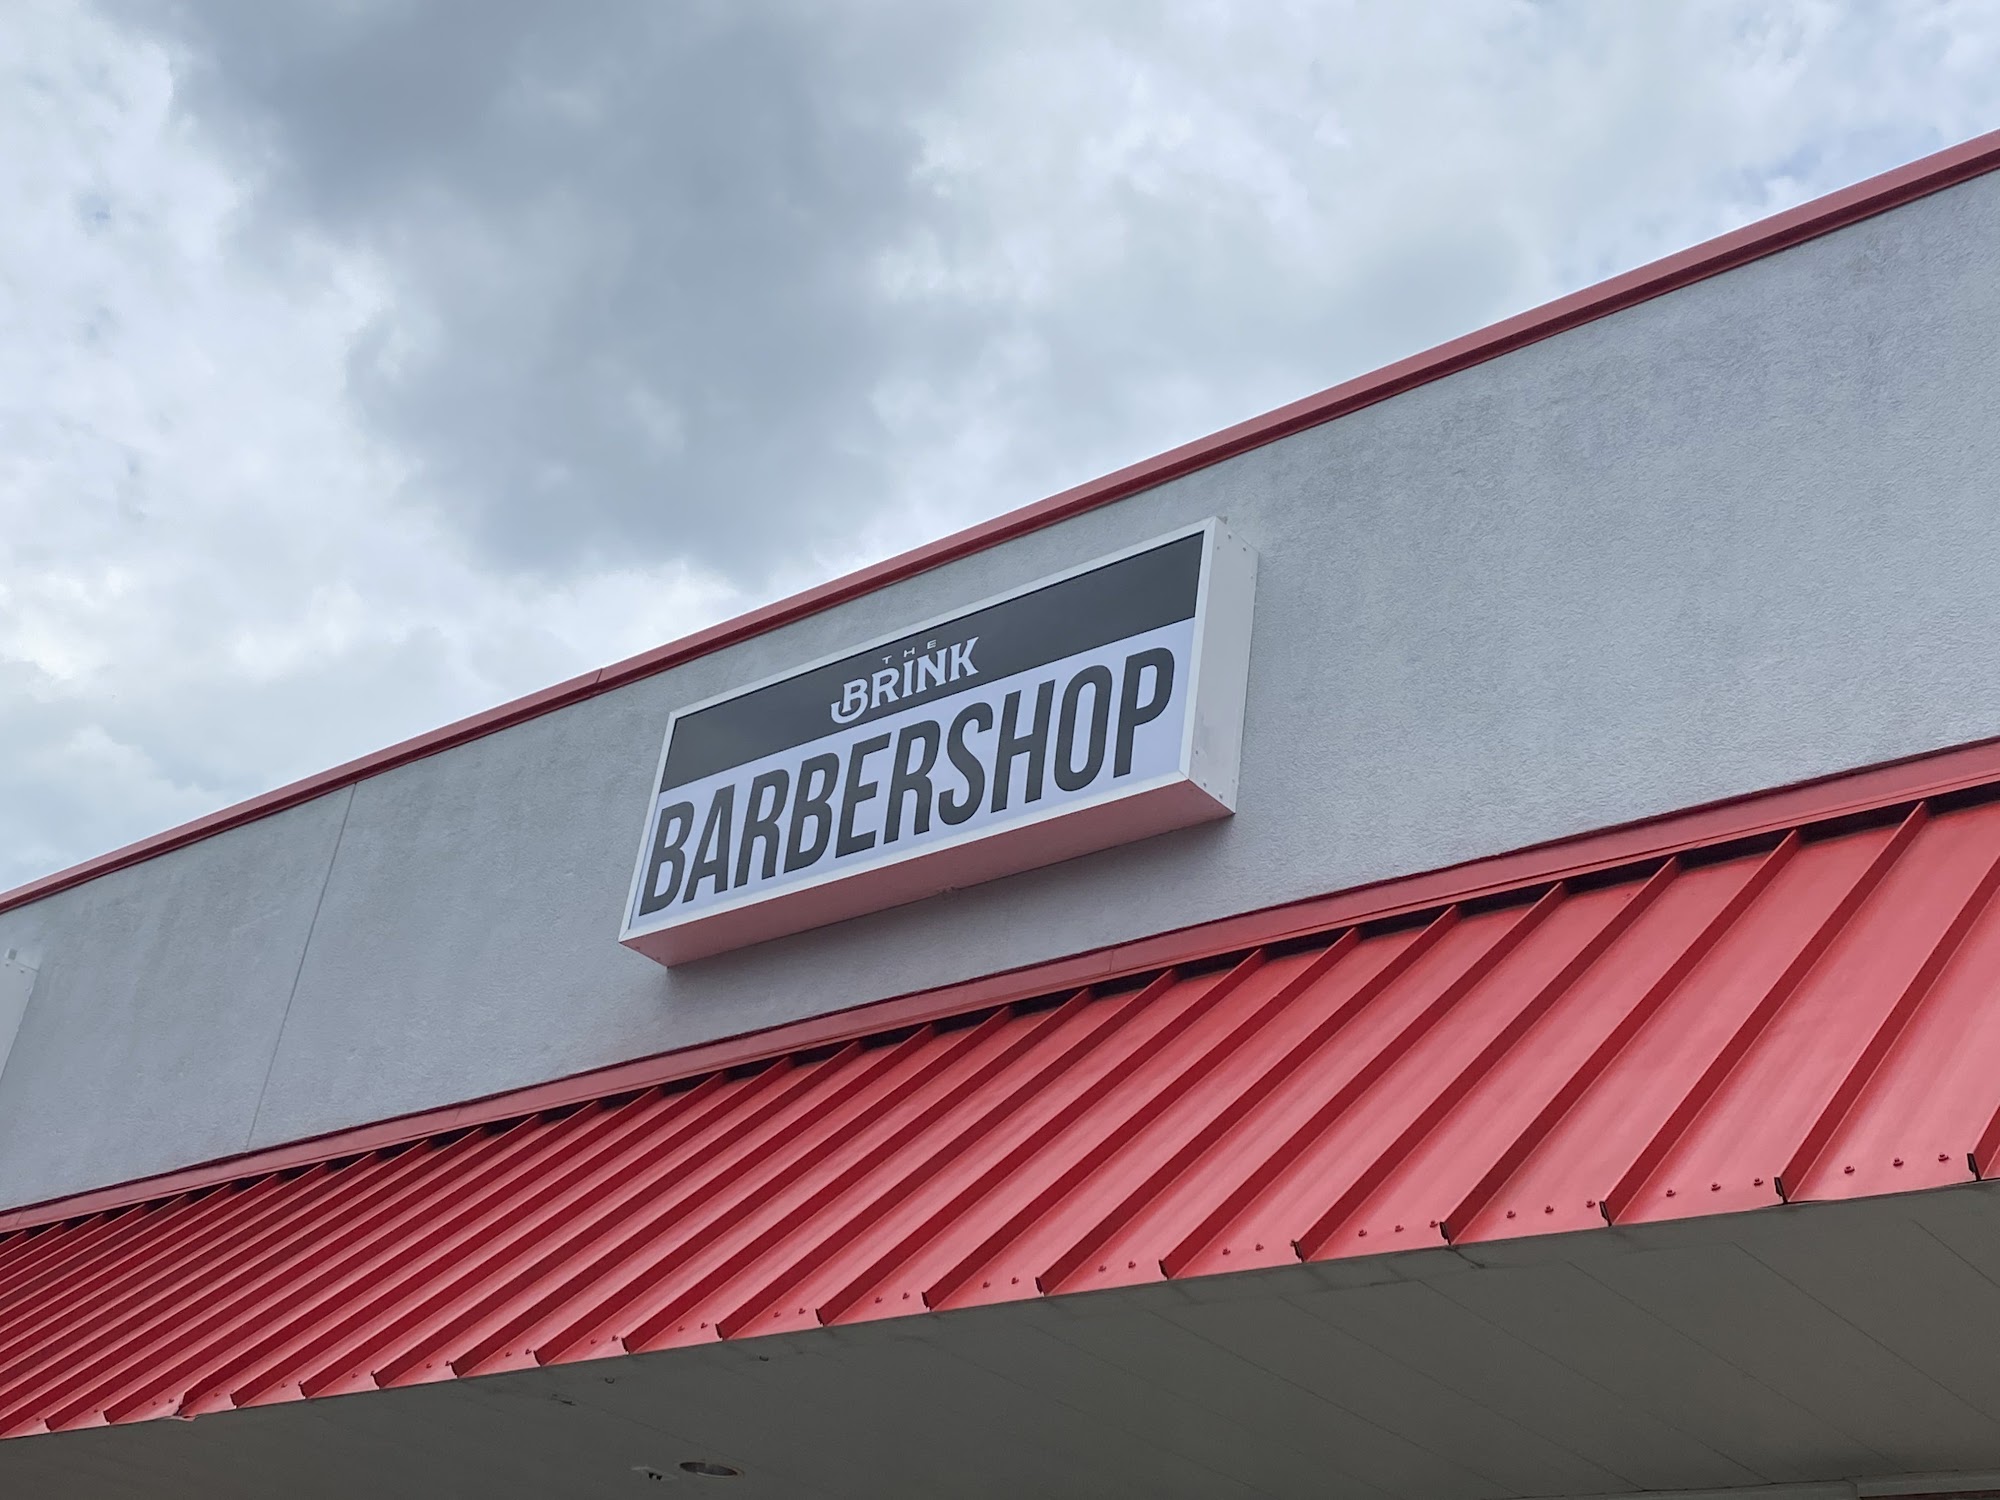 The Brink Barbershop